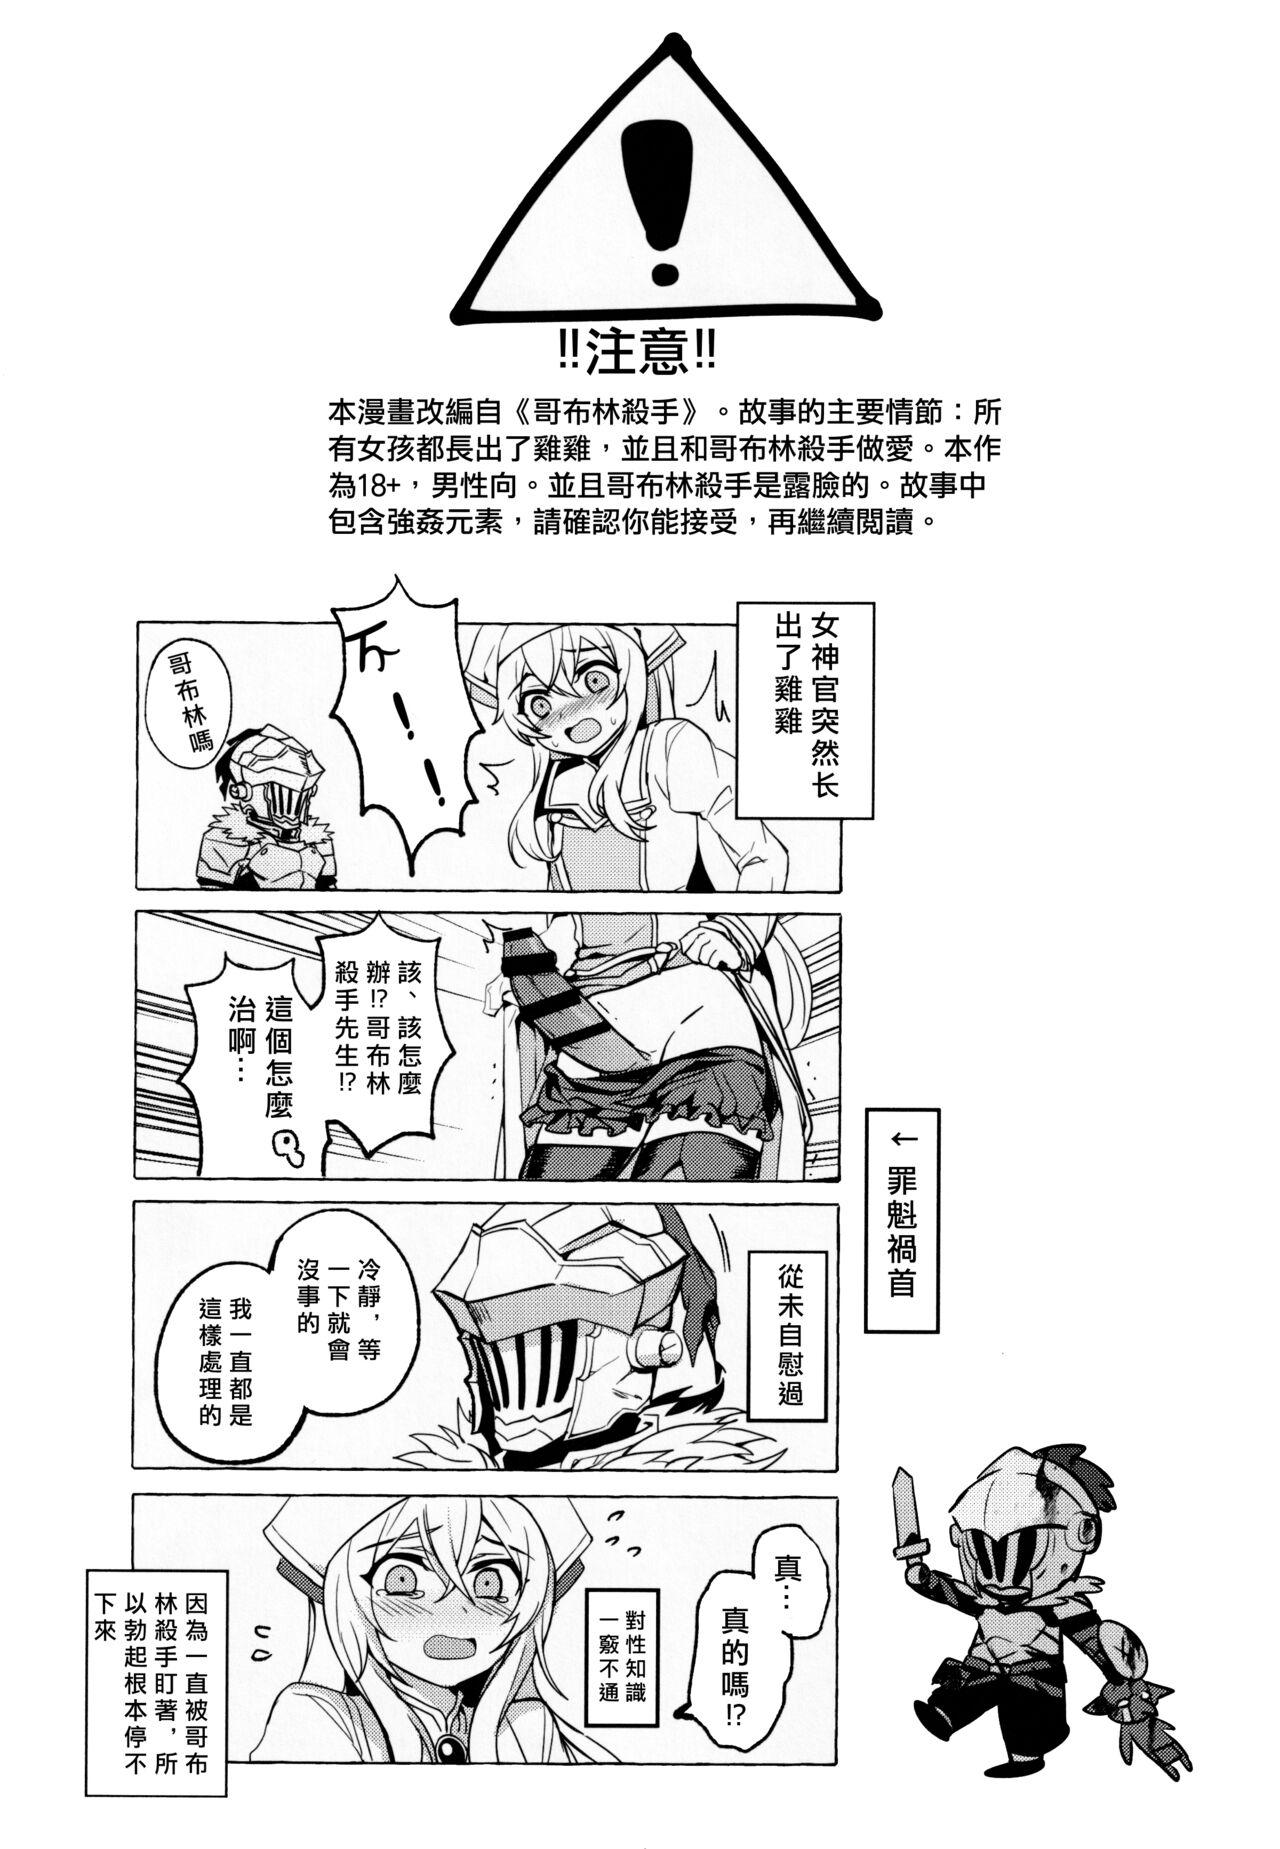 Shaved Goblin Slayer-san no Ero Hon. | 哥布林殺手工口本 - Goblin slayer Web Cam - Page 2